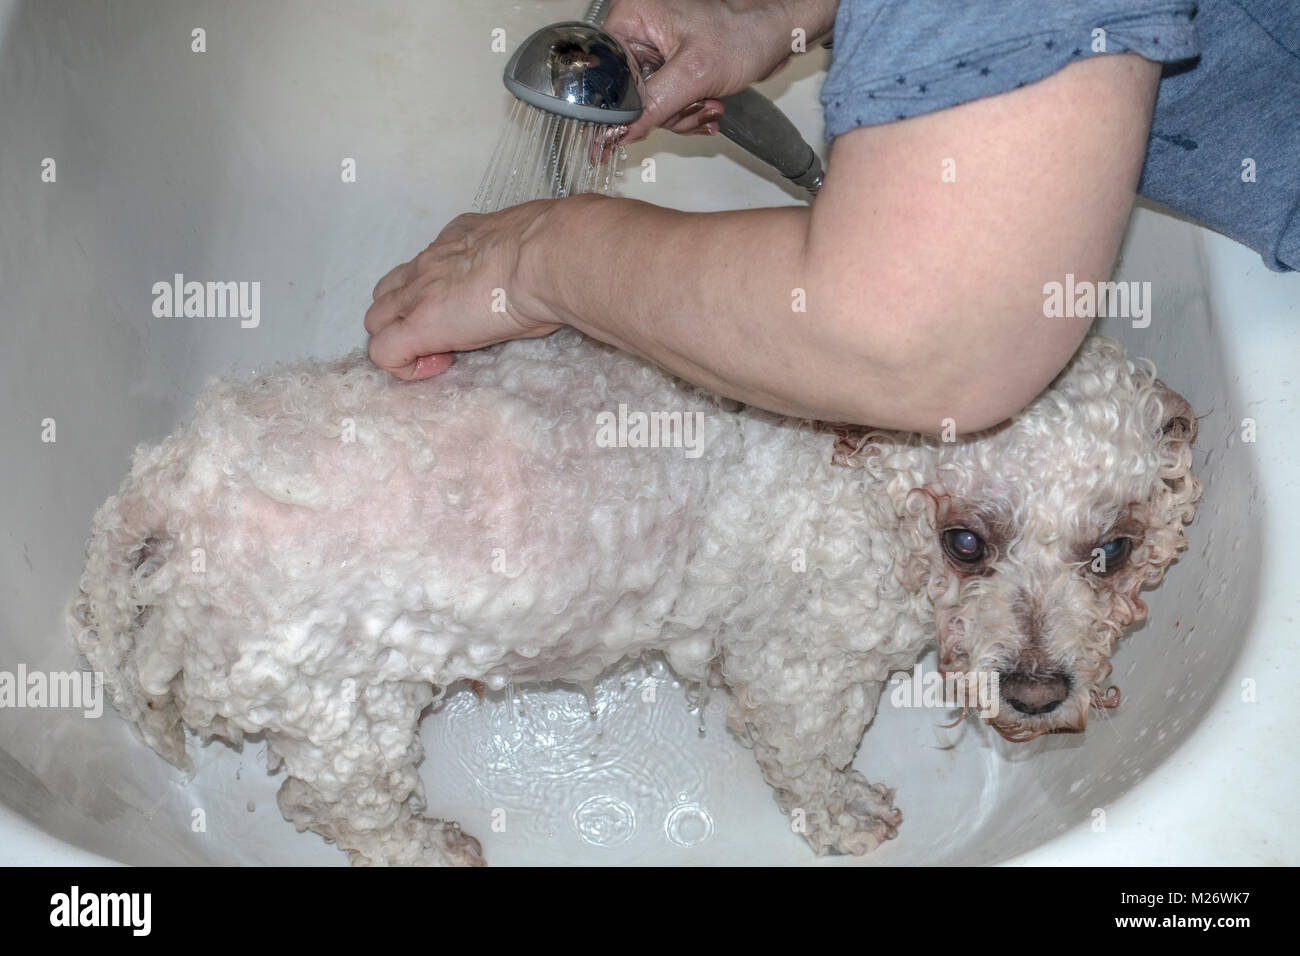 Femme à laver ses cheveux bouclés blancs revêtus, animal pedigree Bichon Frise chien, dans un bain à remous à la maison, avec de l'eau chaude savonneuse. Angleterre, Royaume-Uni. Banque D'Images